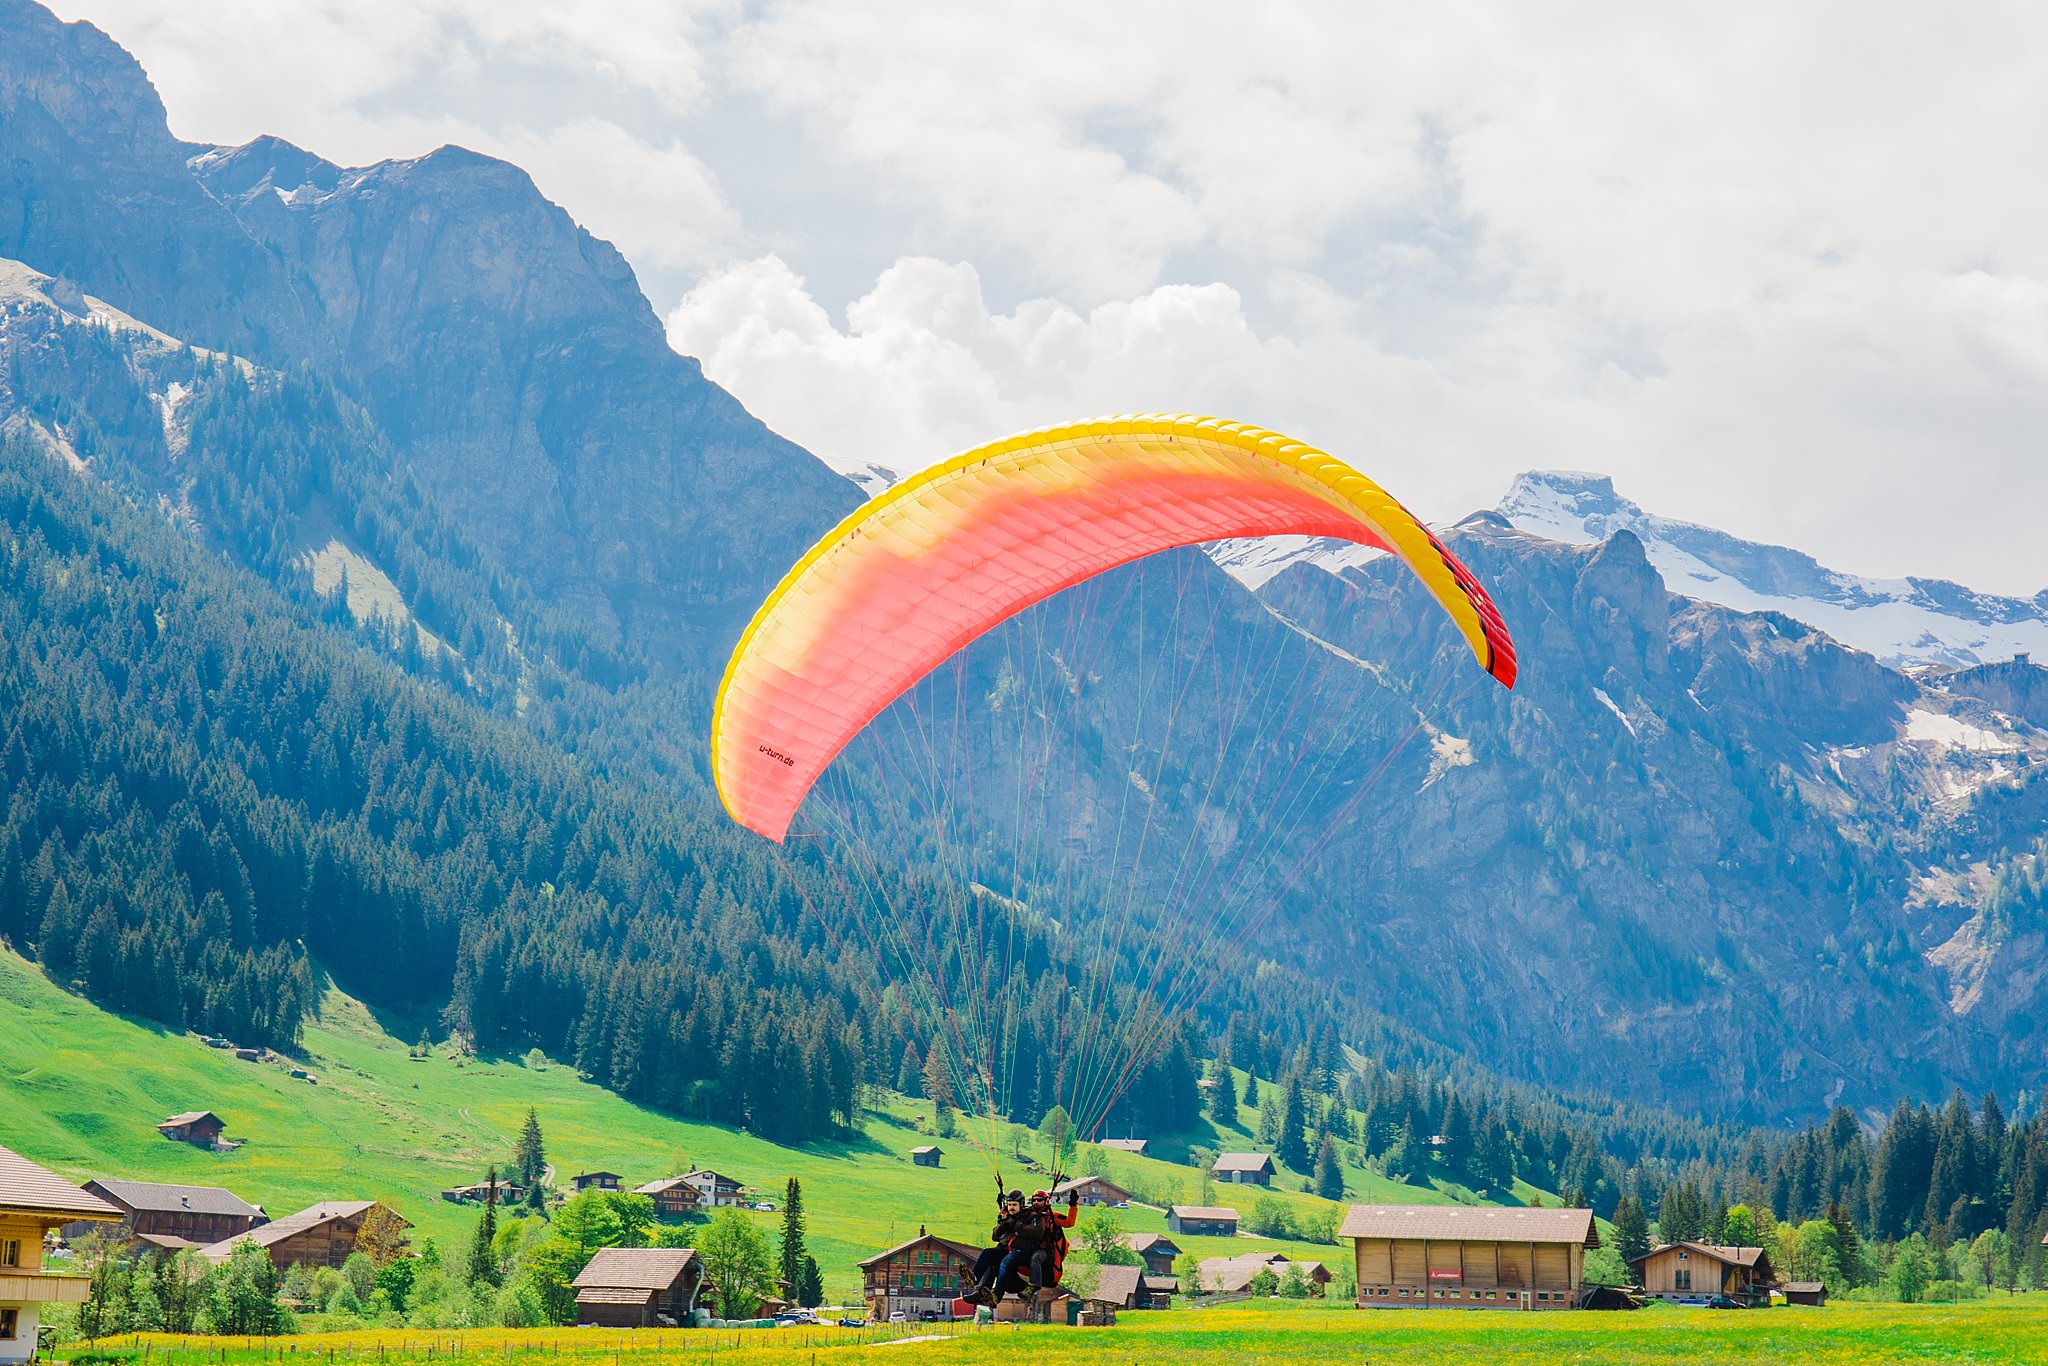 adelboden,adventure,europe,european vacation,hiking,paragliding,switzerland,